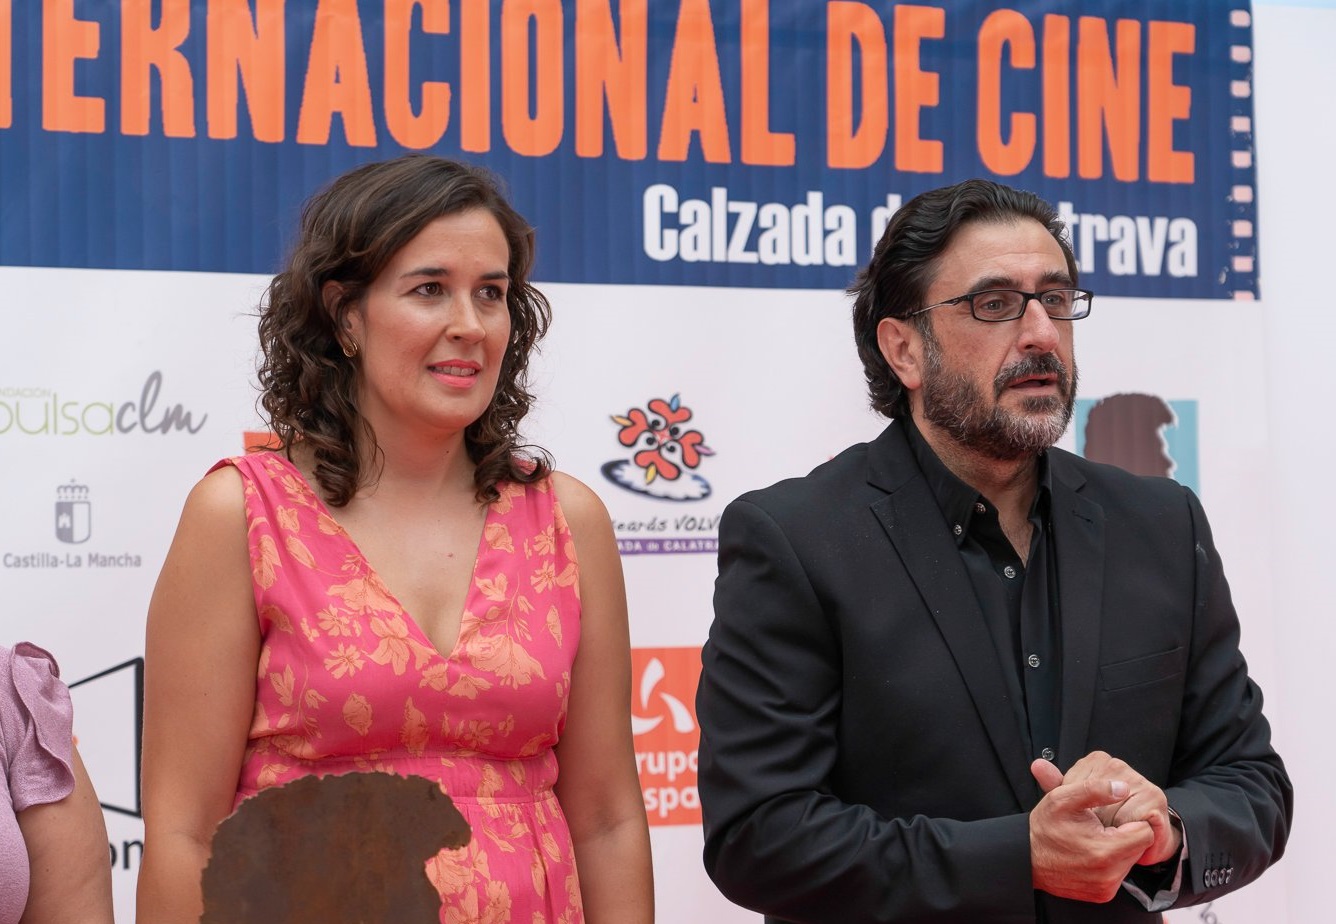 El X Festival Internacional de Cine de Calzada de Calatrava celebrará su histórica décima edición con una alta expectación